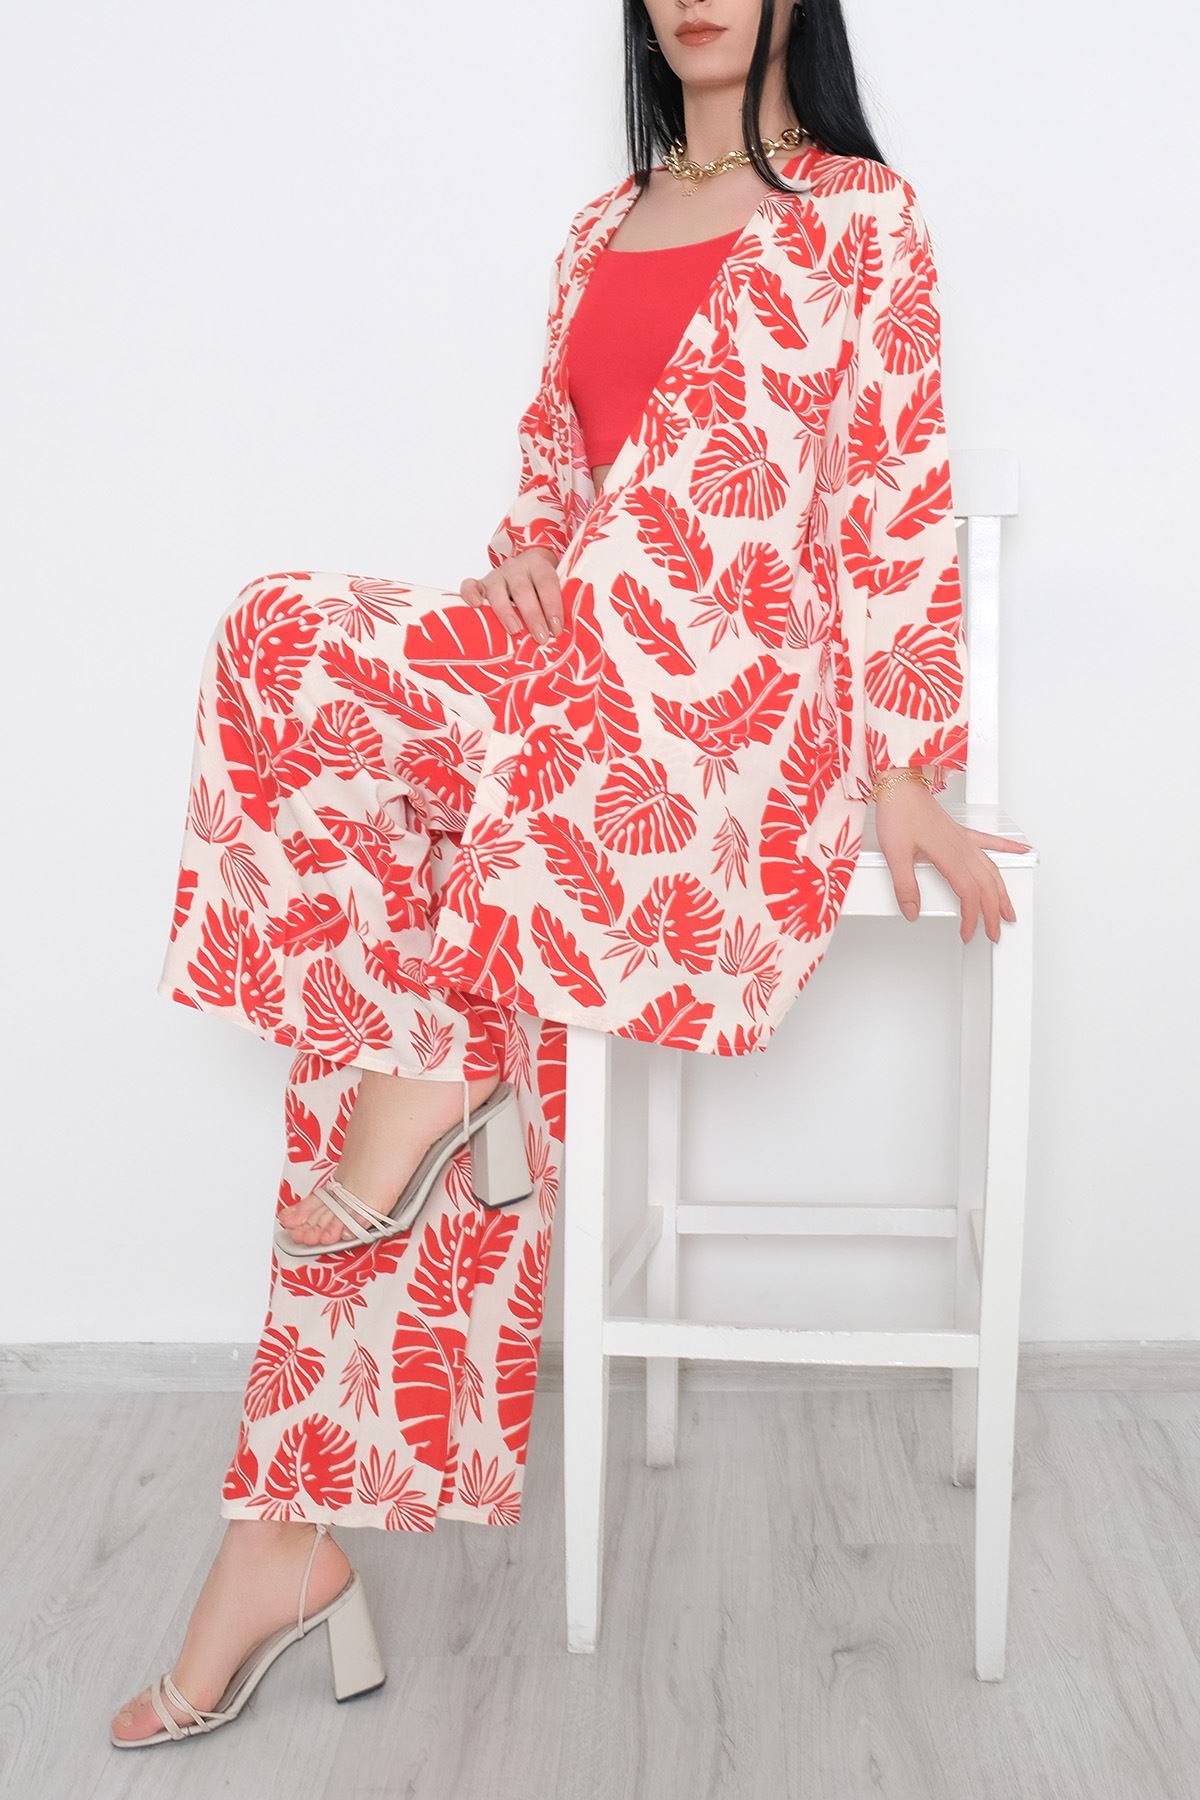 Kimono Takım Kırmızıbeyaz - 10553.1095.